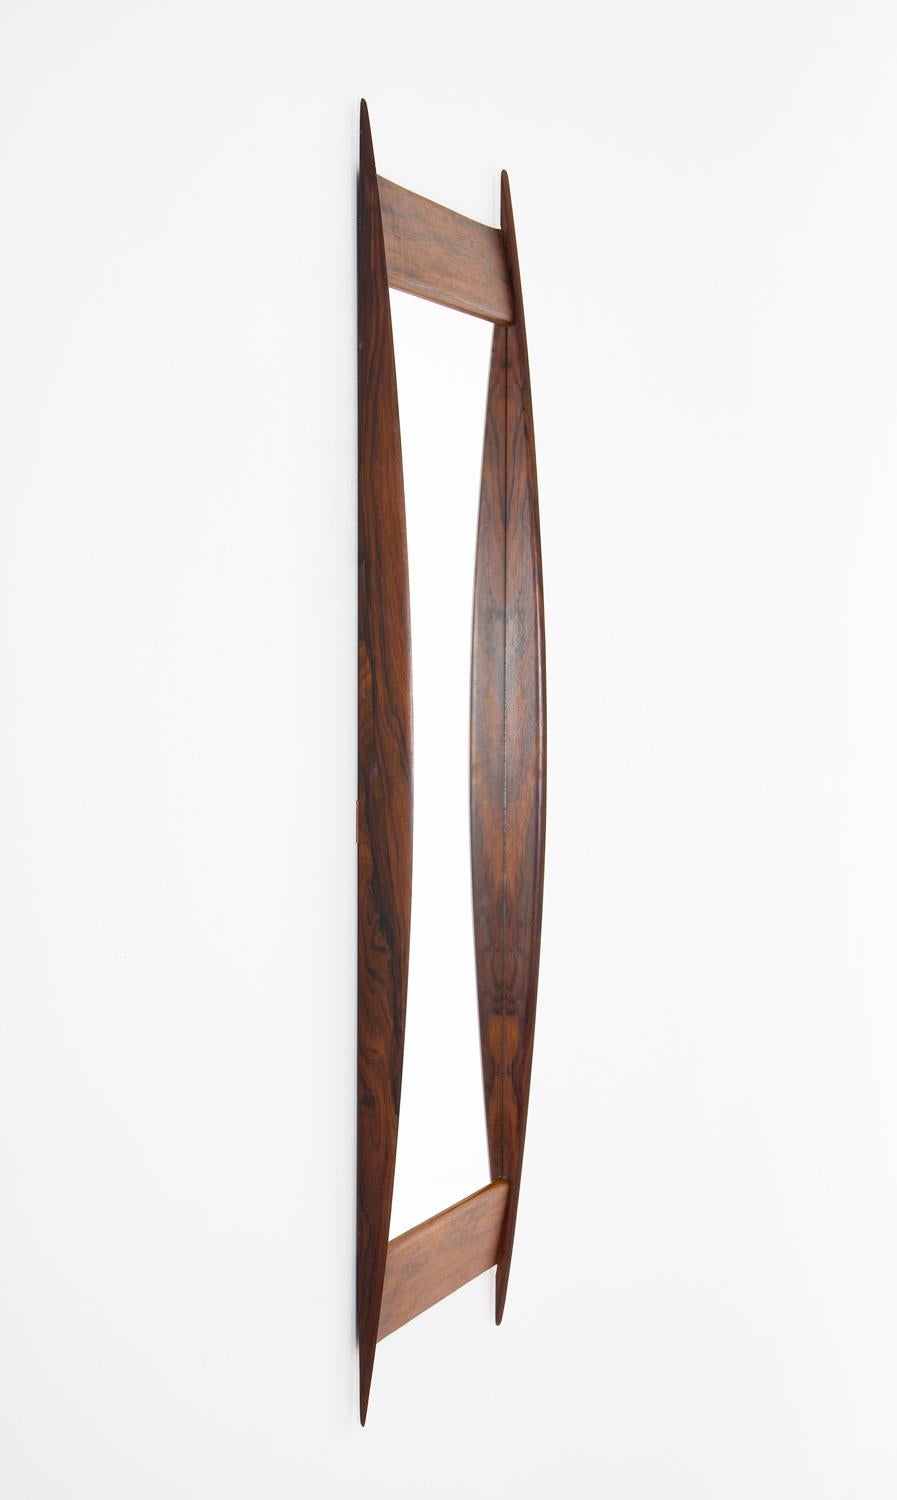 Miroir rectangulaire no 7075 en bois de rose, attribué à Rimbert Sandholt pour Glas & Trä, Suède.
Ce miroir est d'une grande qualité de construction et possède un cadre magnifiquement formé.

Condition : Très bon état vintage. Le verre du miroir